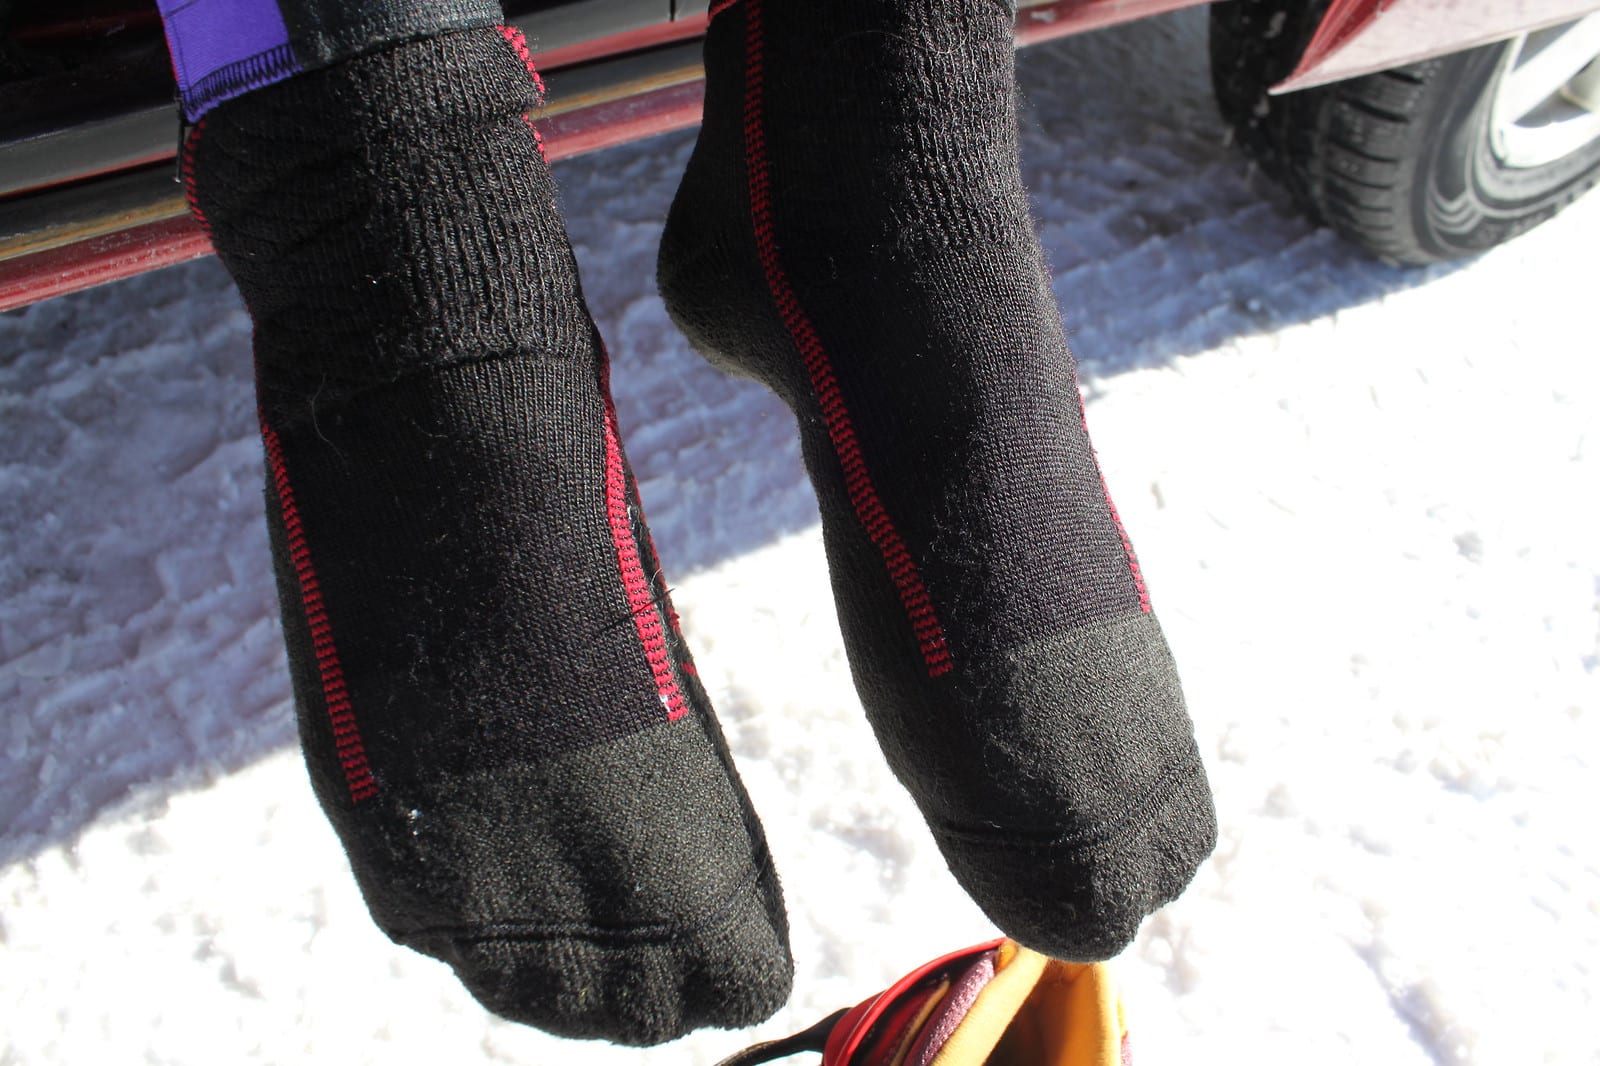 Esquiar sin calcetines ni pantalones: ¿deberías o no?